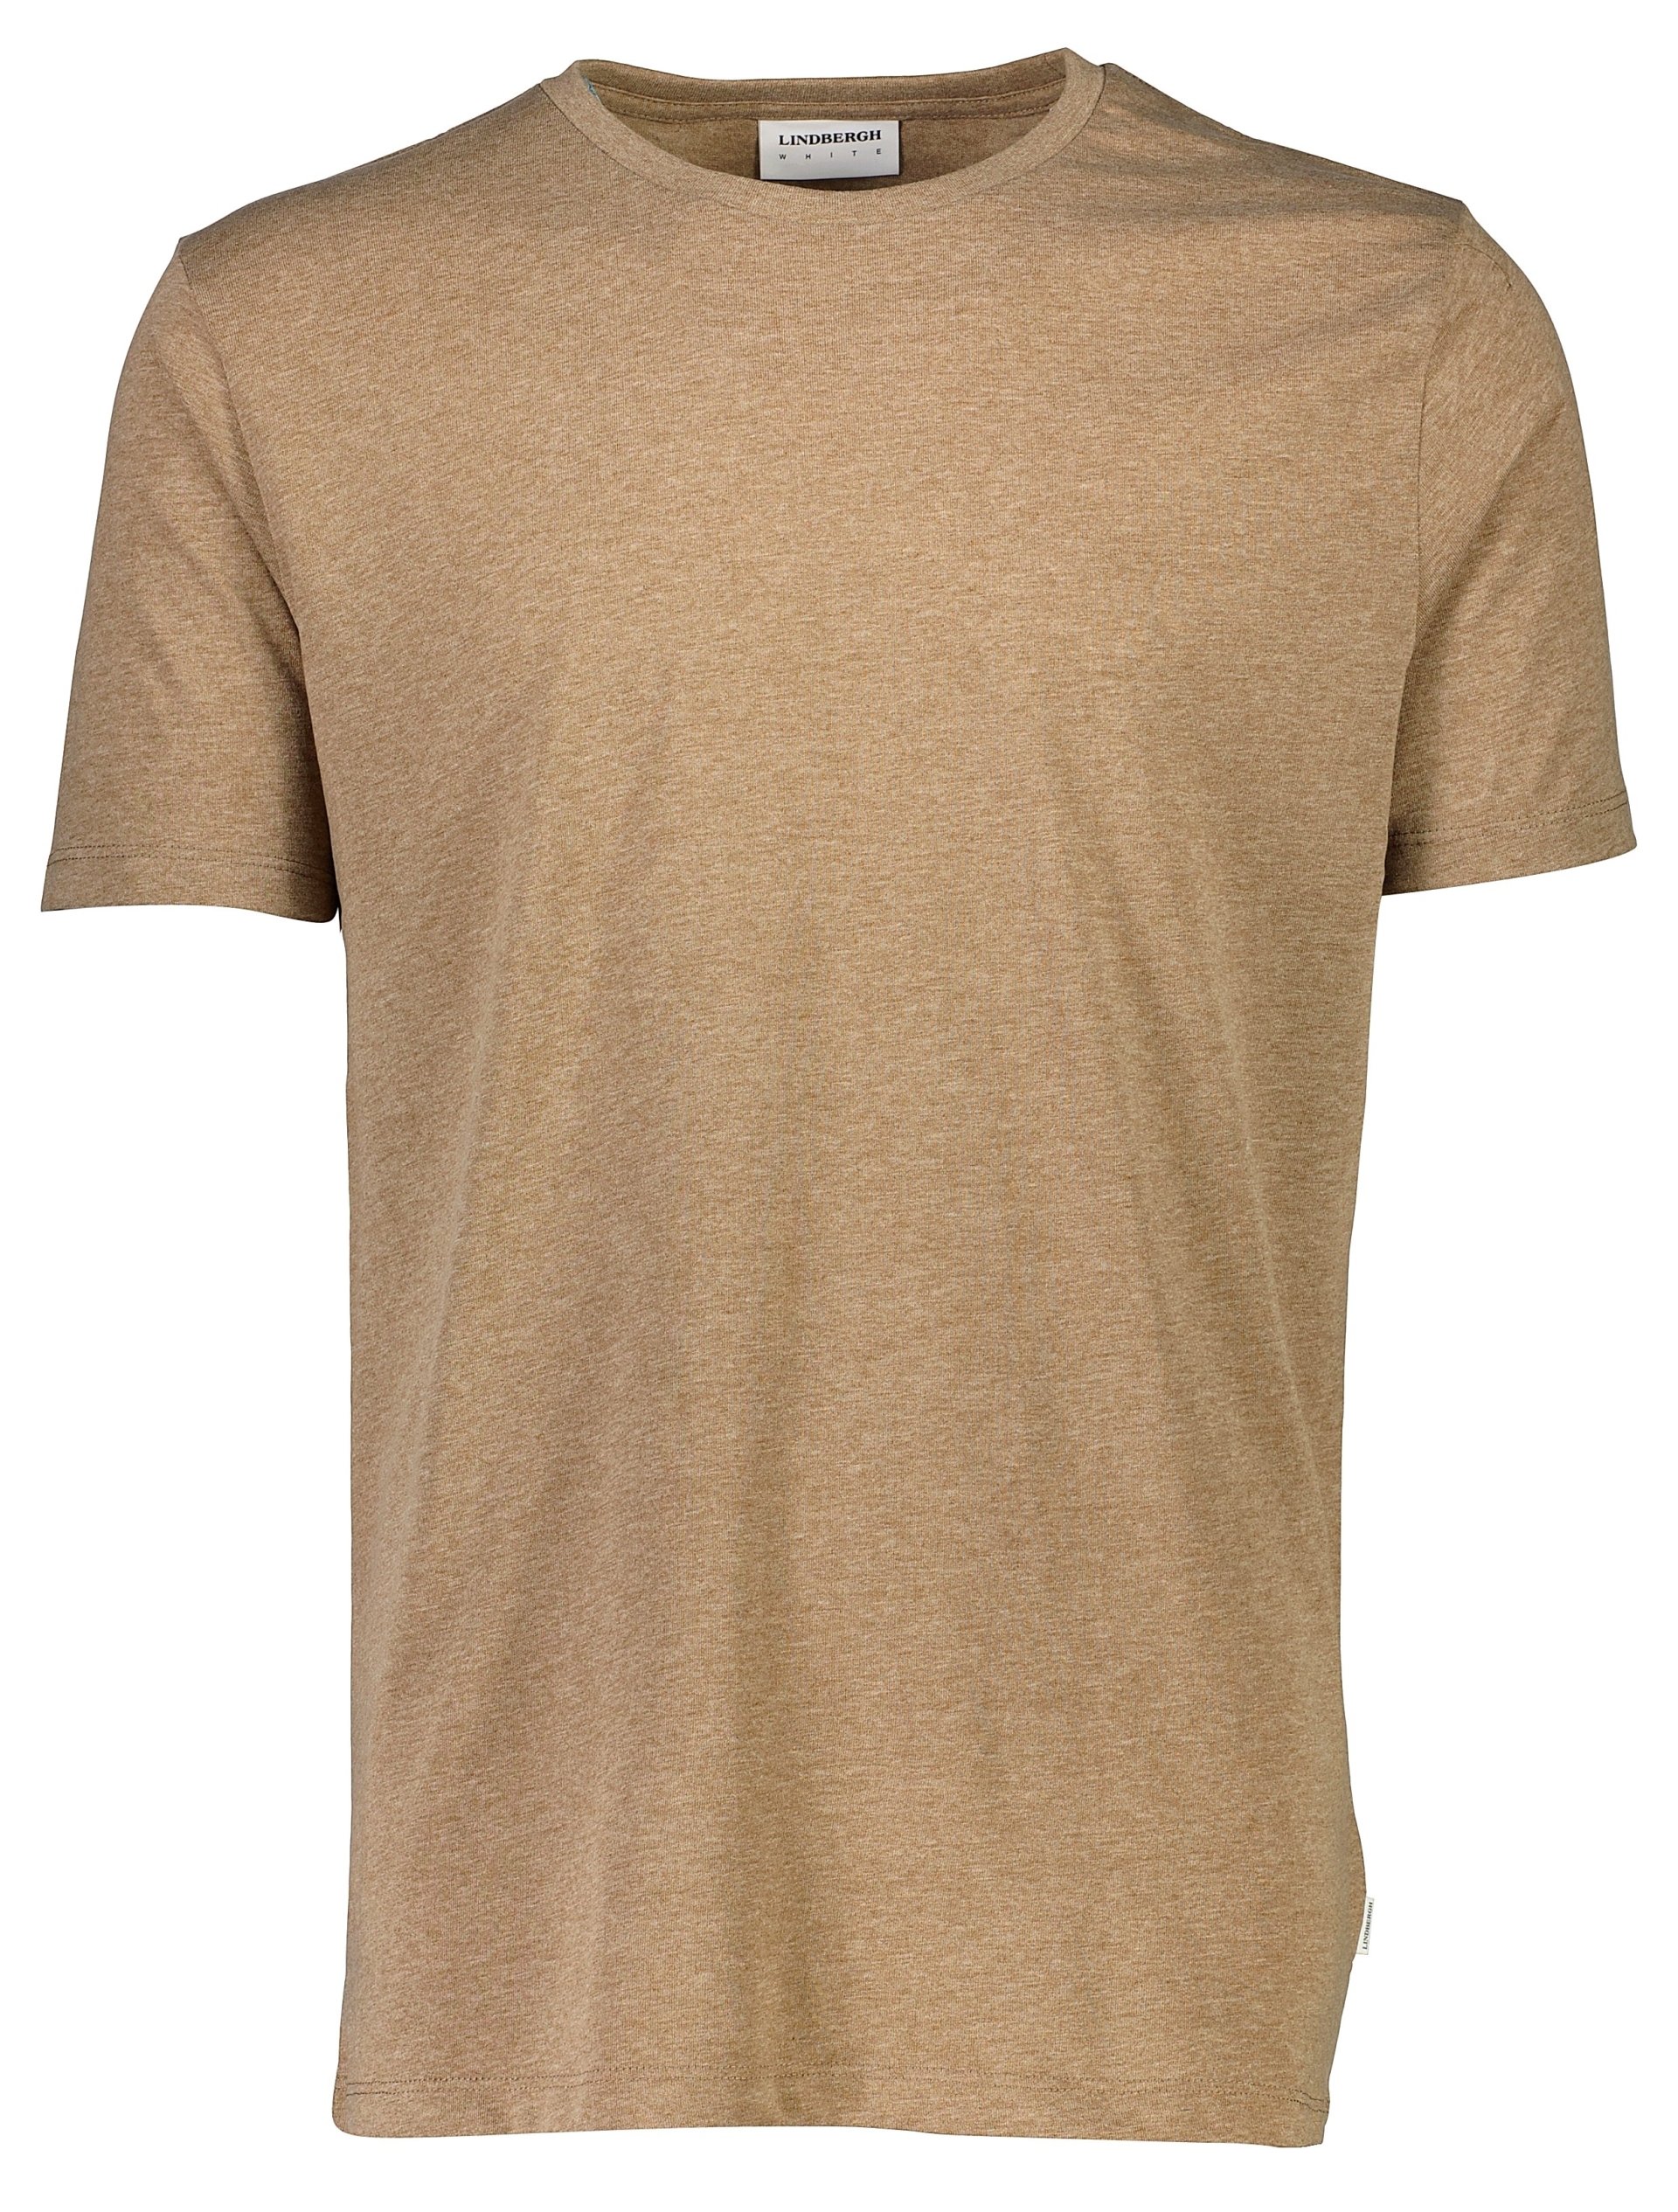 Lindbergh T-shirt sand / sand mel